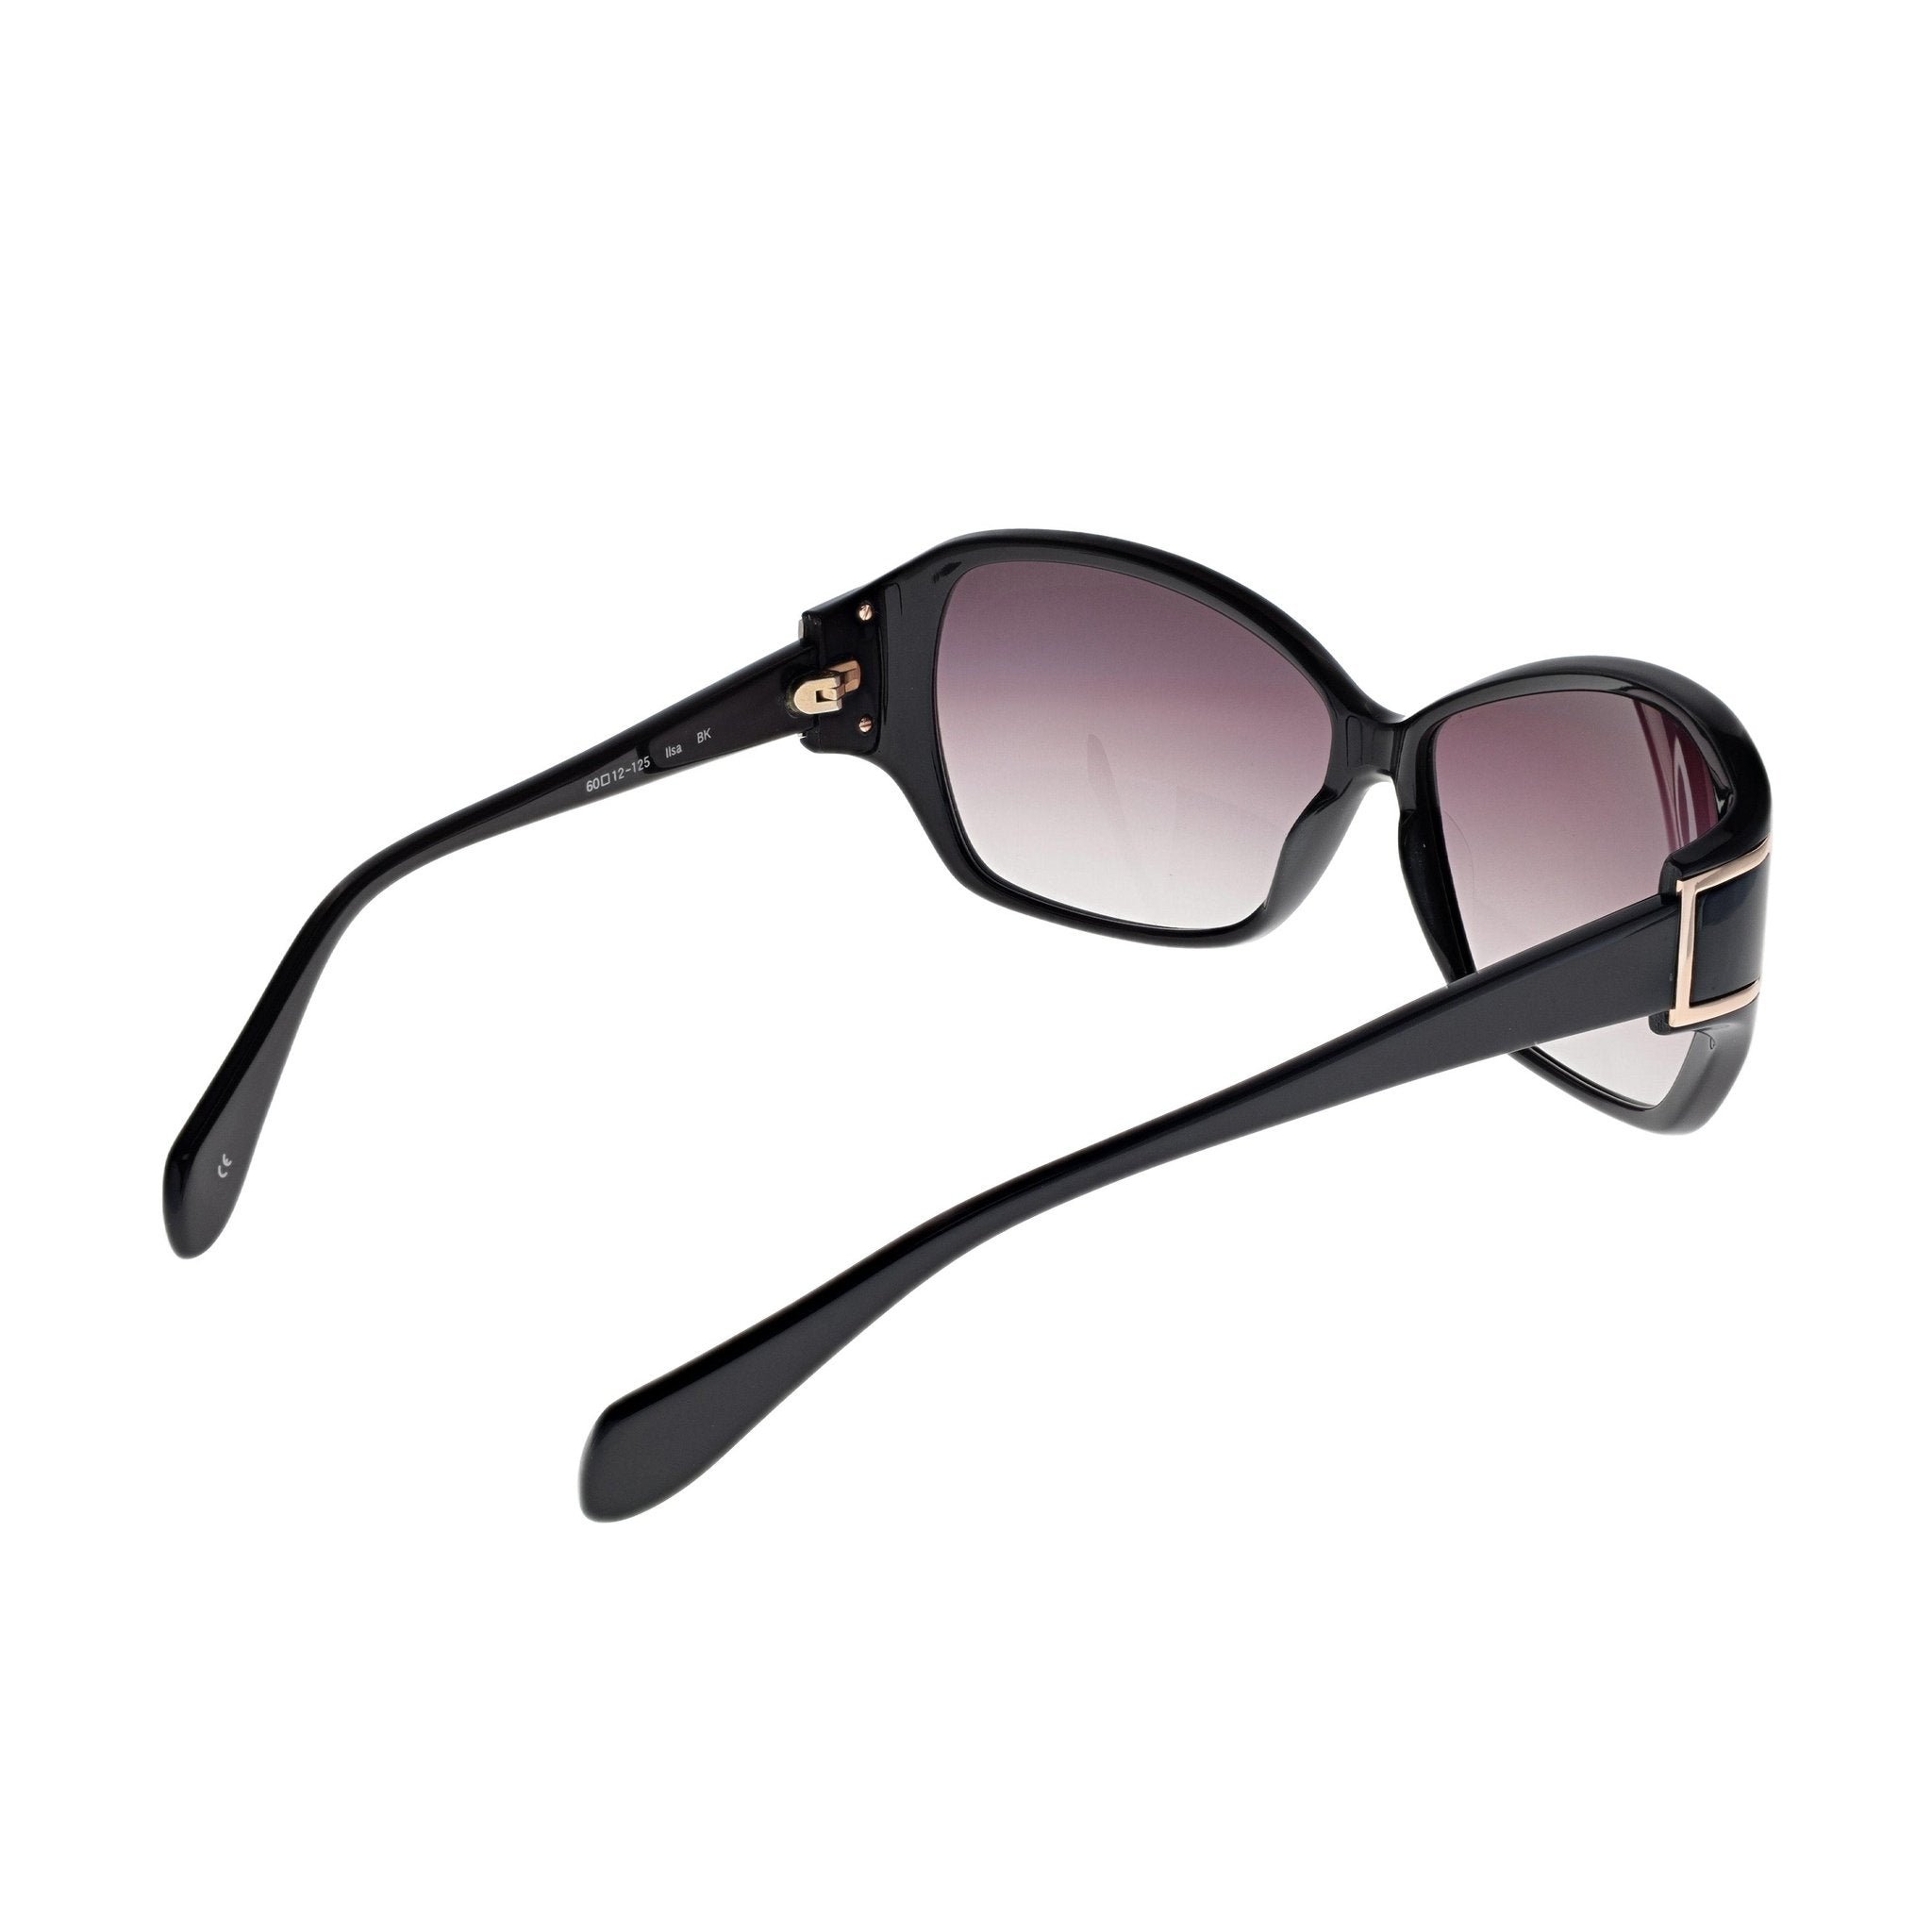 Oliver Peoples Ilsa Sunglasses - Black